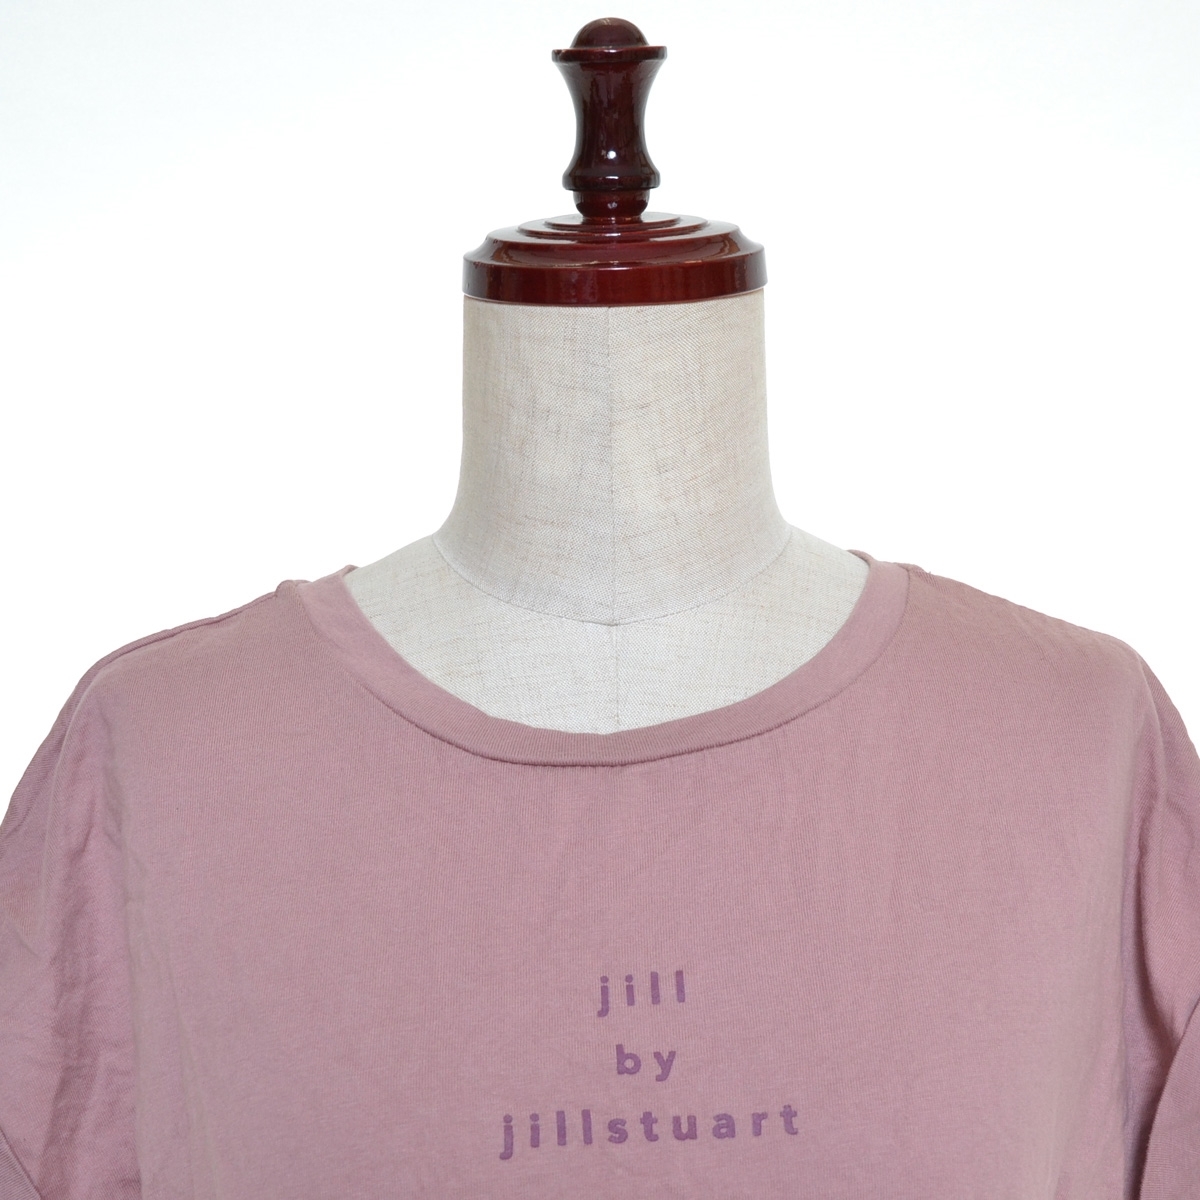 *452597 JILL by JILL STUART Jill bai Jill Stuart * cut and sewn задний лента roll выше T размер FR женский бежевый розовый 